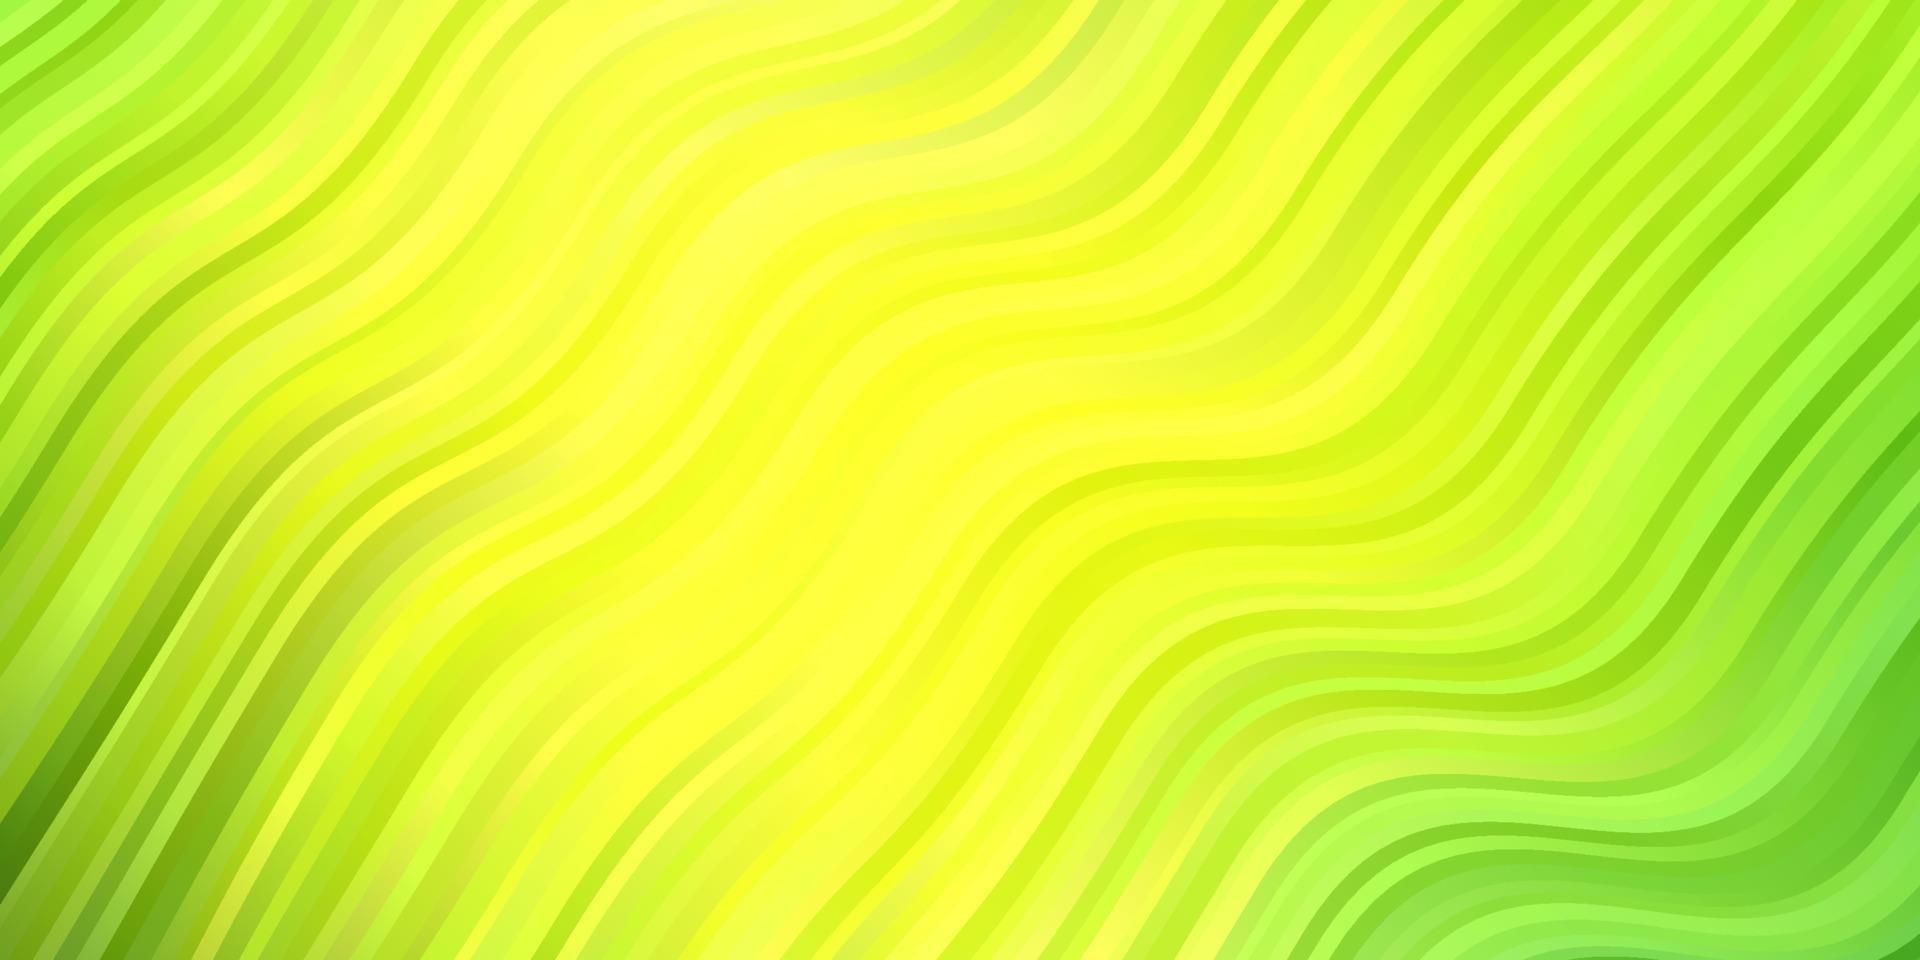 hellgrüner, gelber Vektorhintergrund mit trockenen Linien. vektor